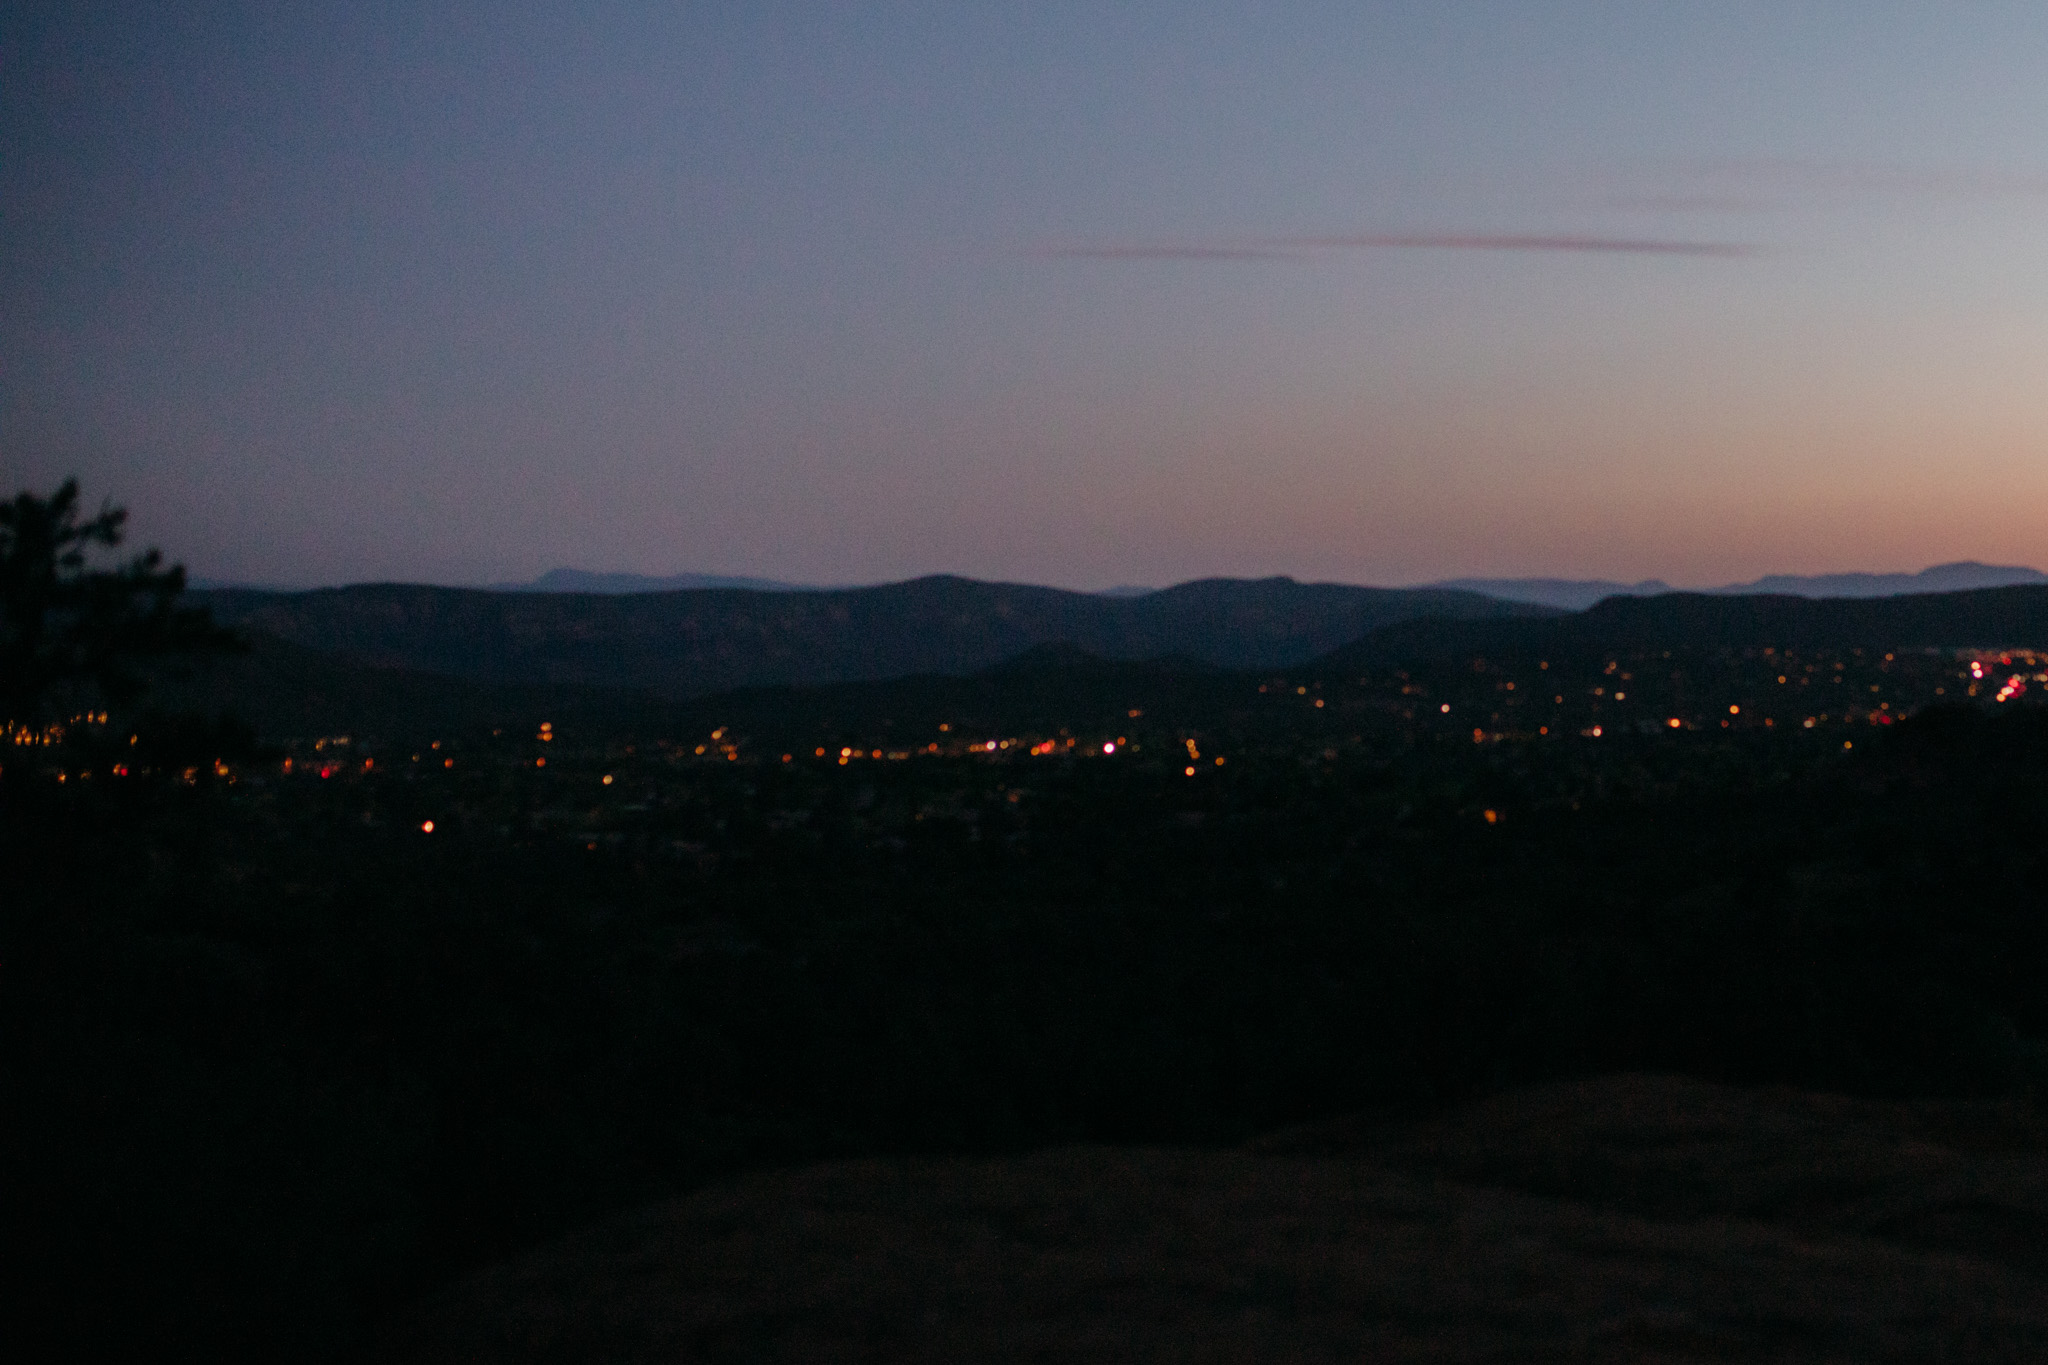 Sunset Sedona Elopement - blue hour headlamp photos